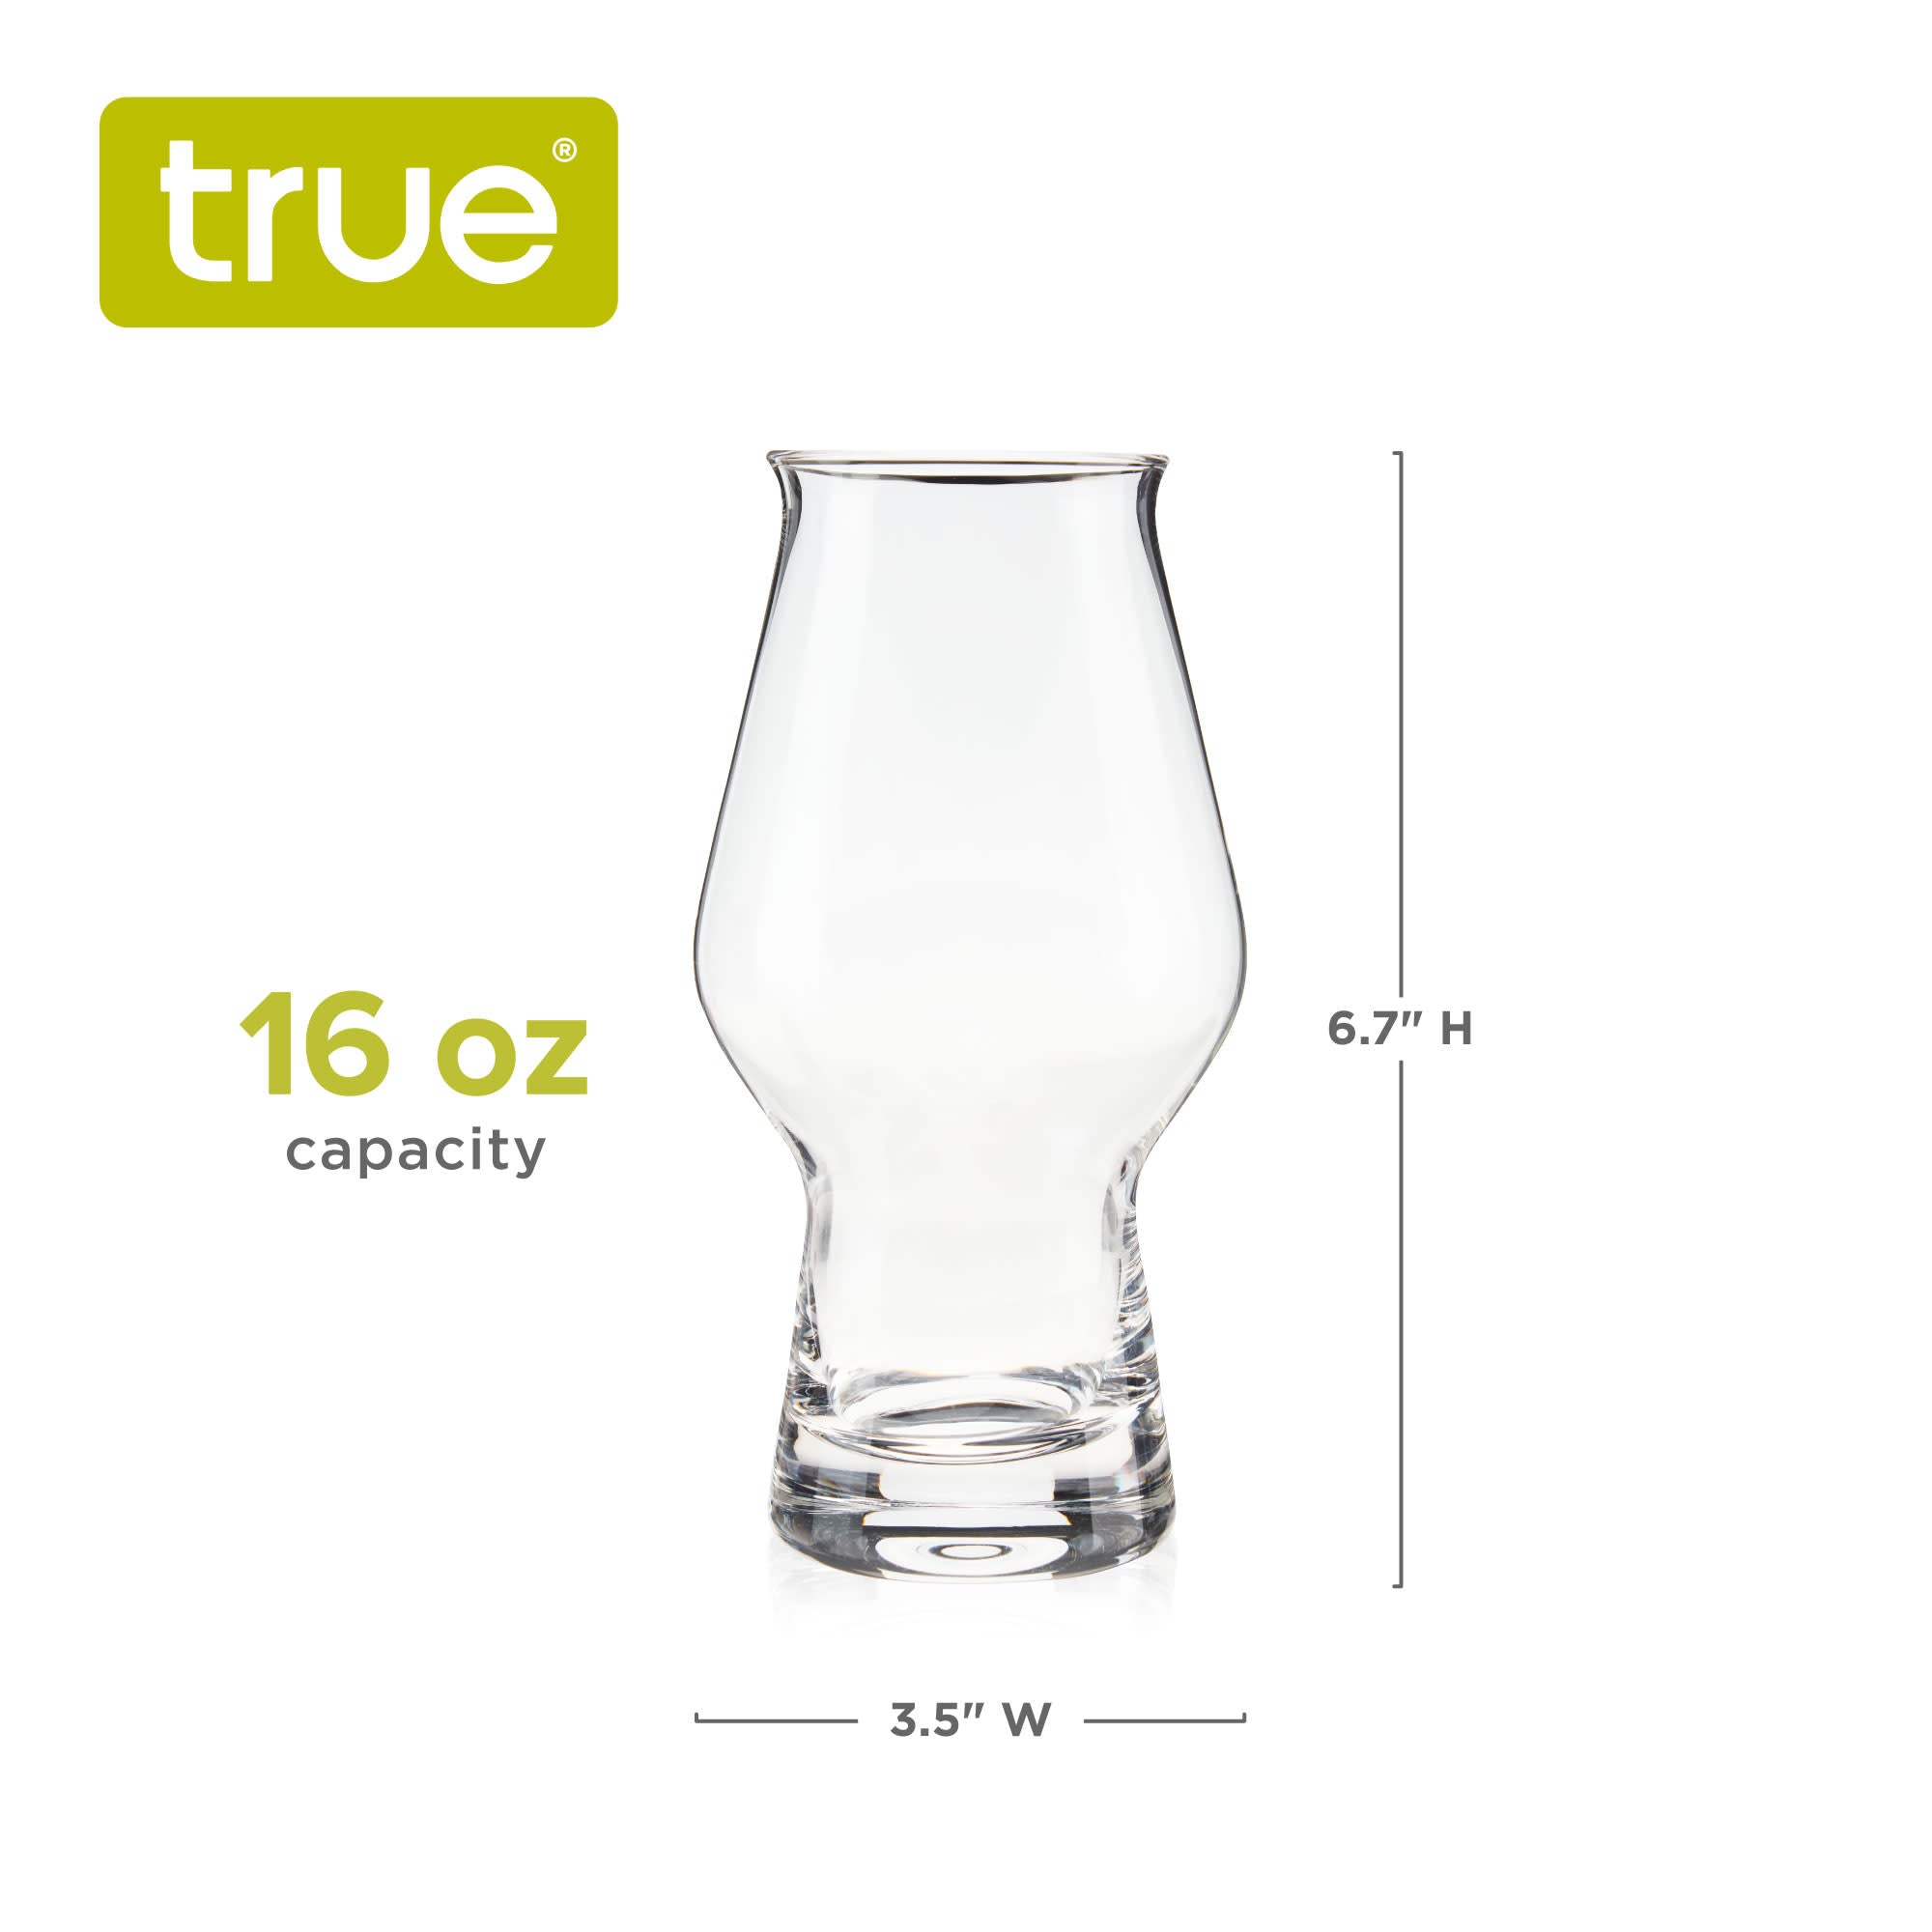 IPA Beer Glasses, Set of 4 by True (9955)